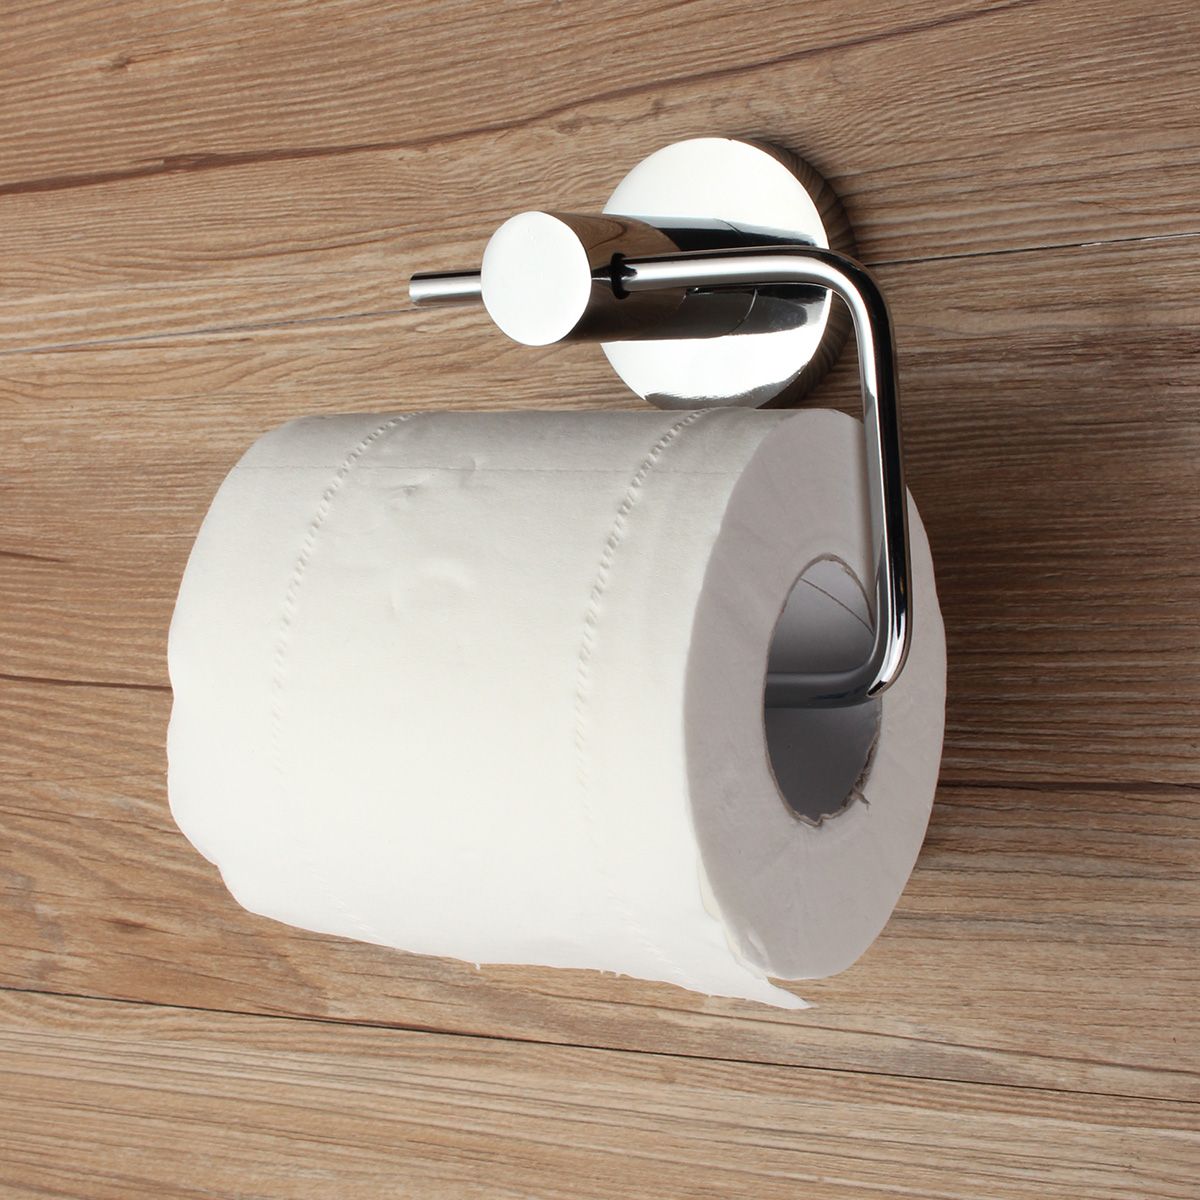 Toilet-Roll-Tissue-Paper-Dispenser-Holder-Wall-Mounted-Ring-Hoop-Hook-Chrome-New-1339556